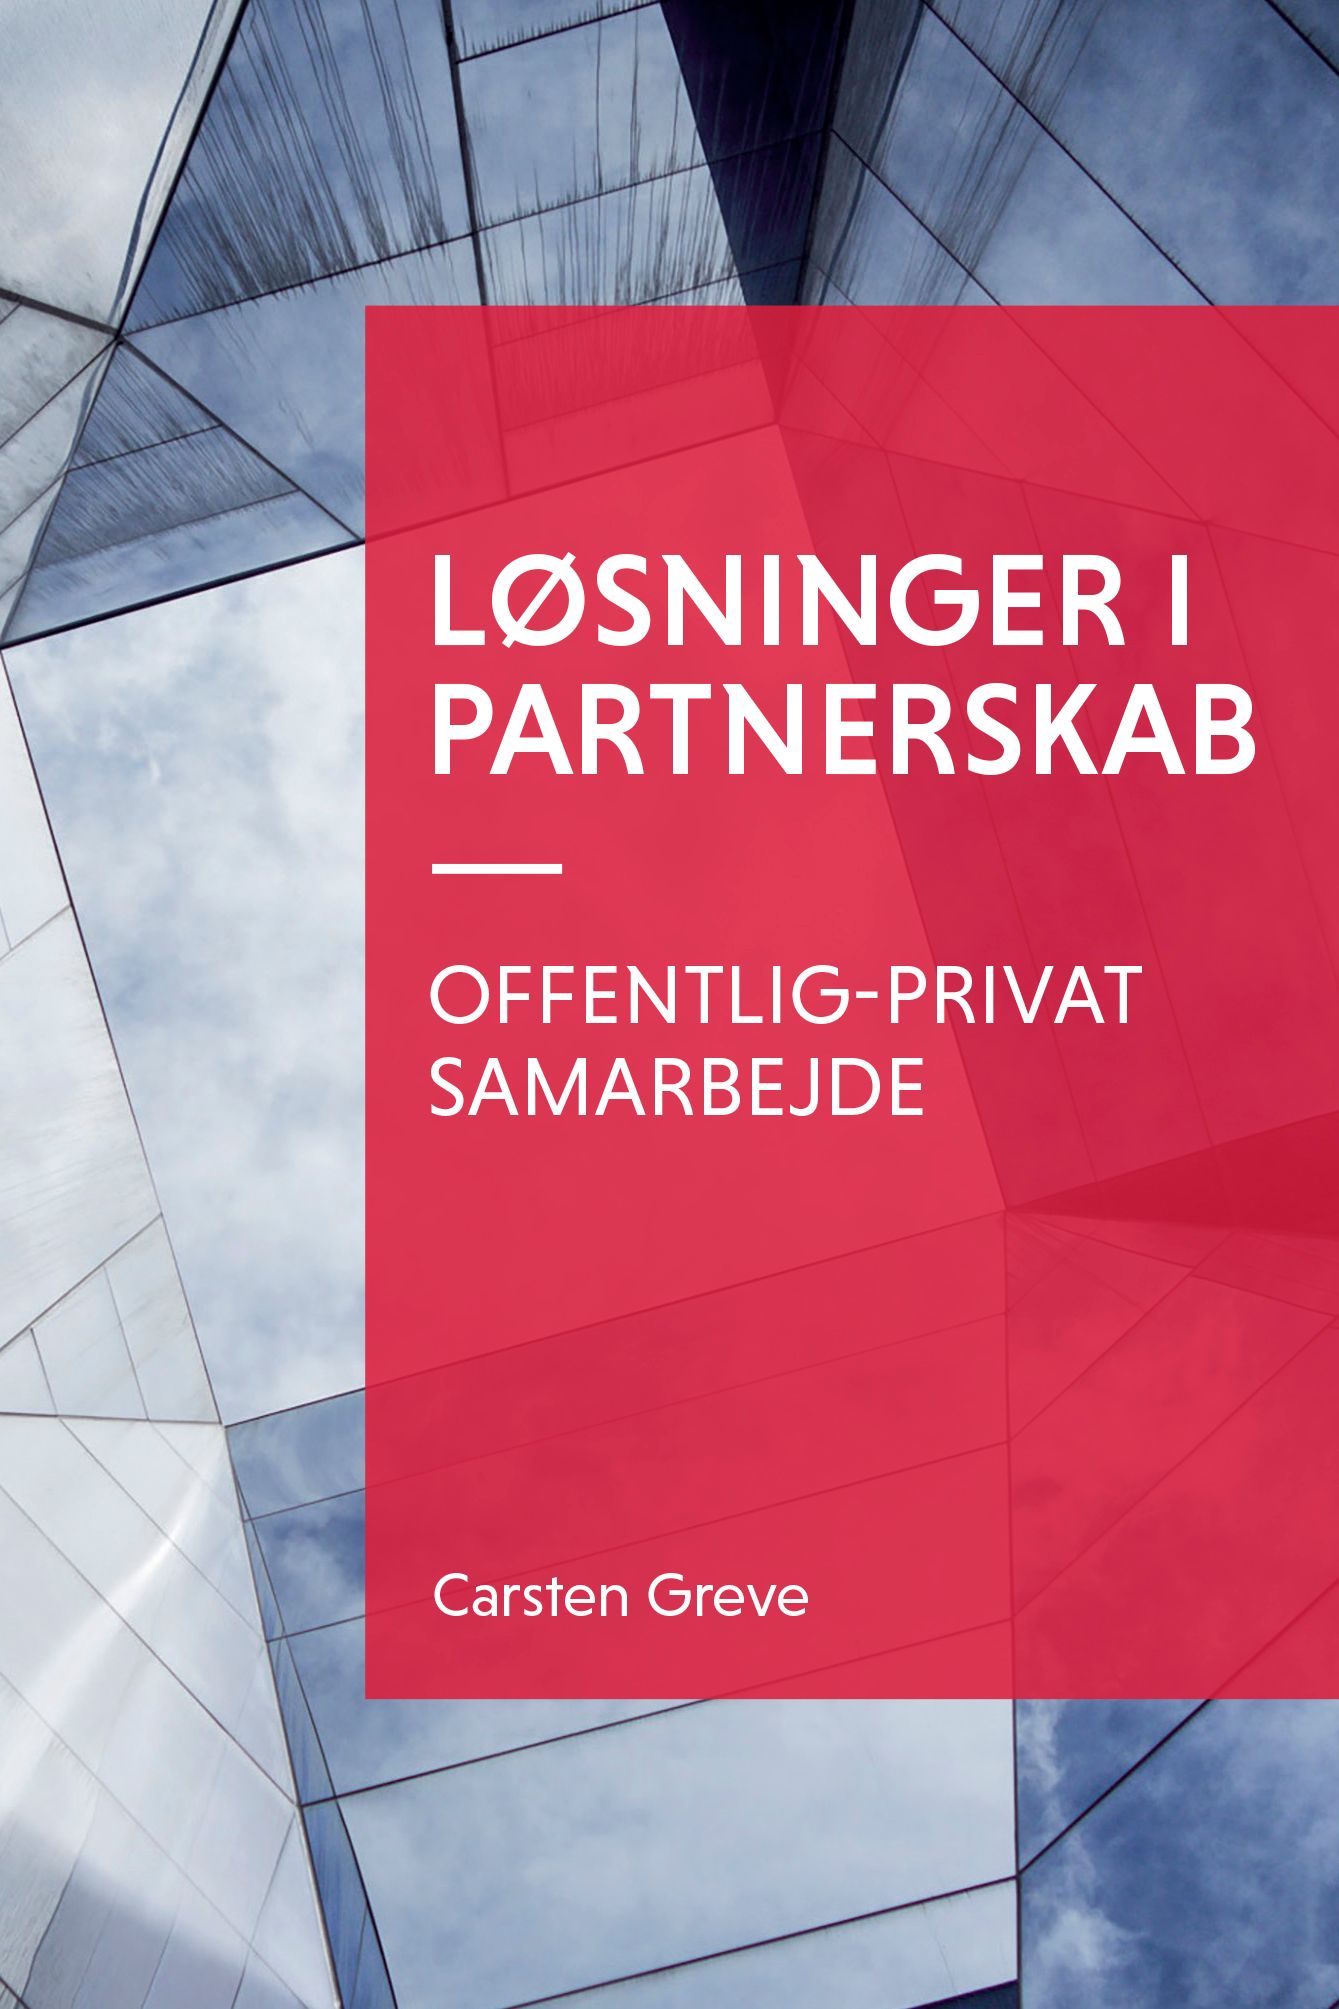 Løsninger i partnerskab, e-bok av Carsten Greve